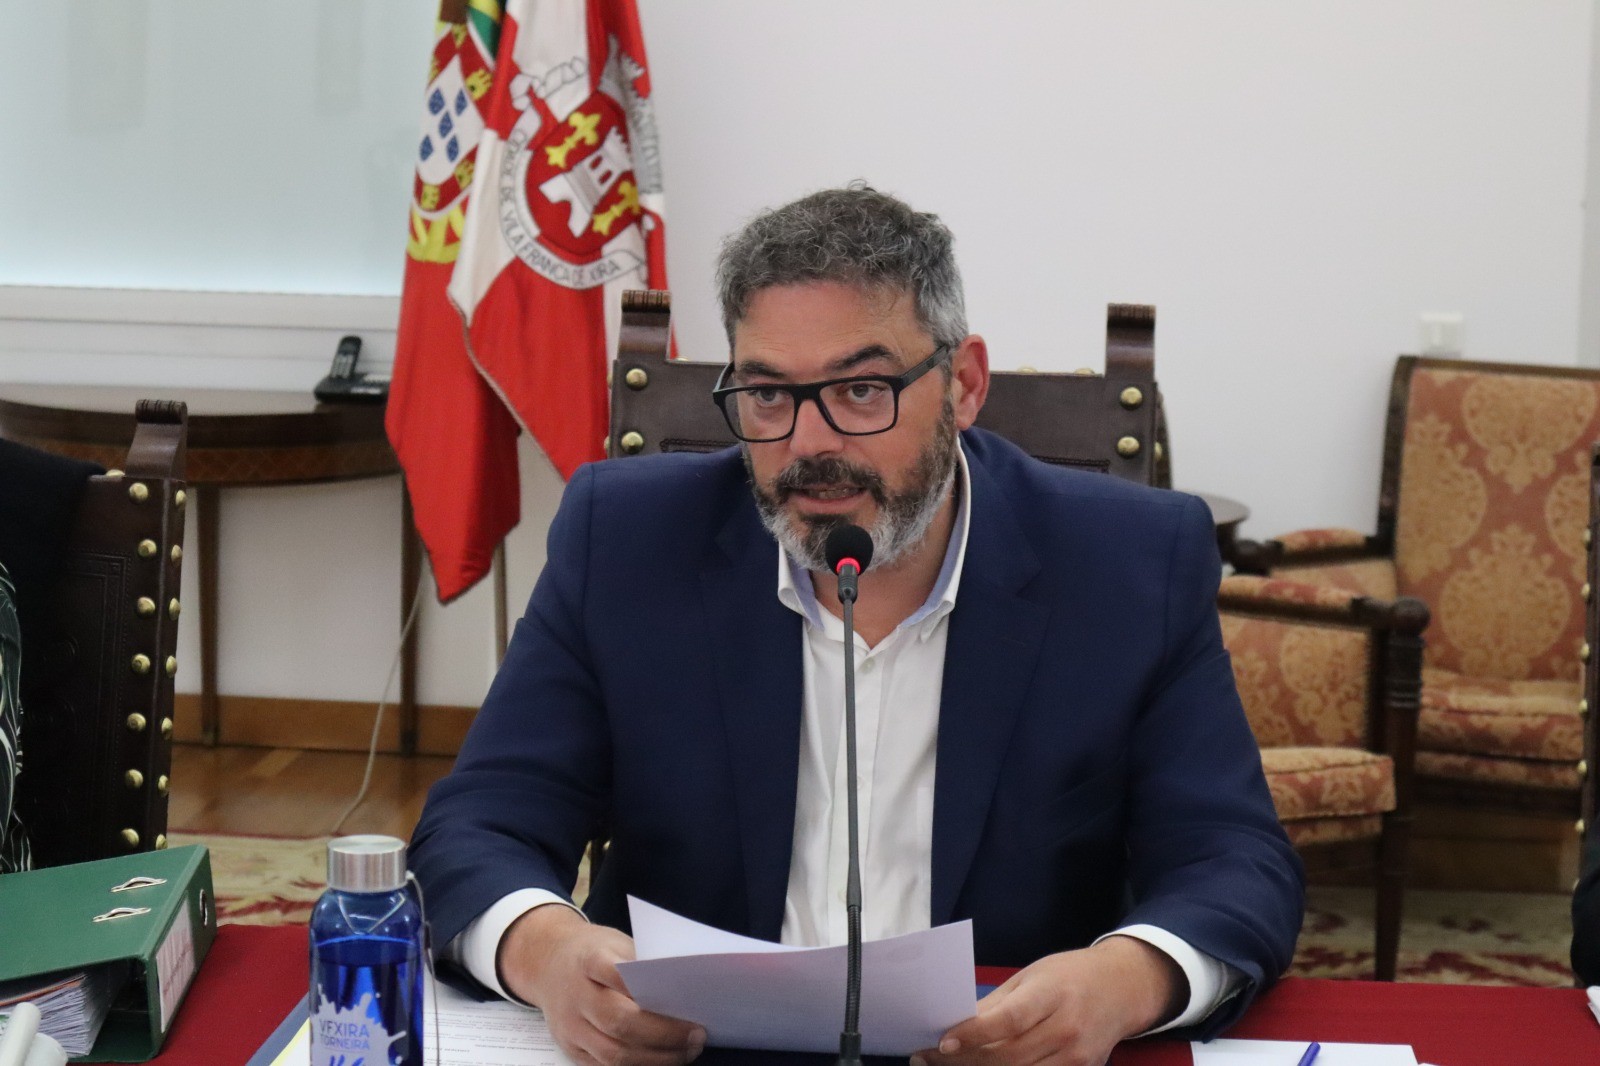 Contas da Câmara Municipal de Vila Franca de Xira de 2022 aprovadas com resultado positivo de mai...